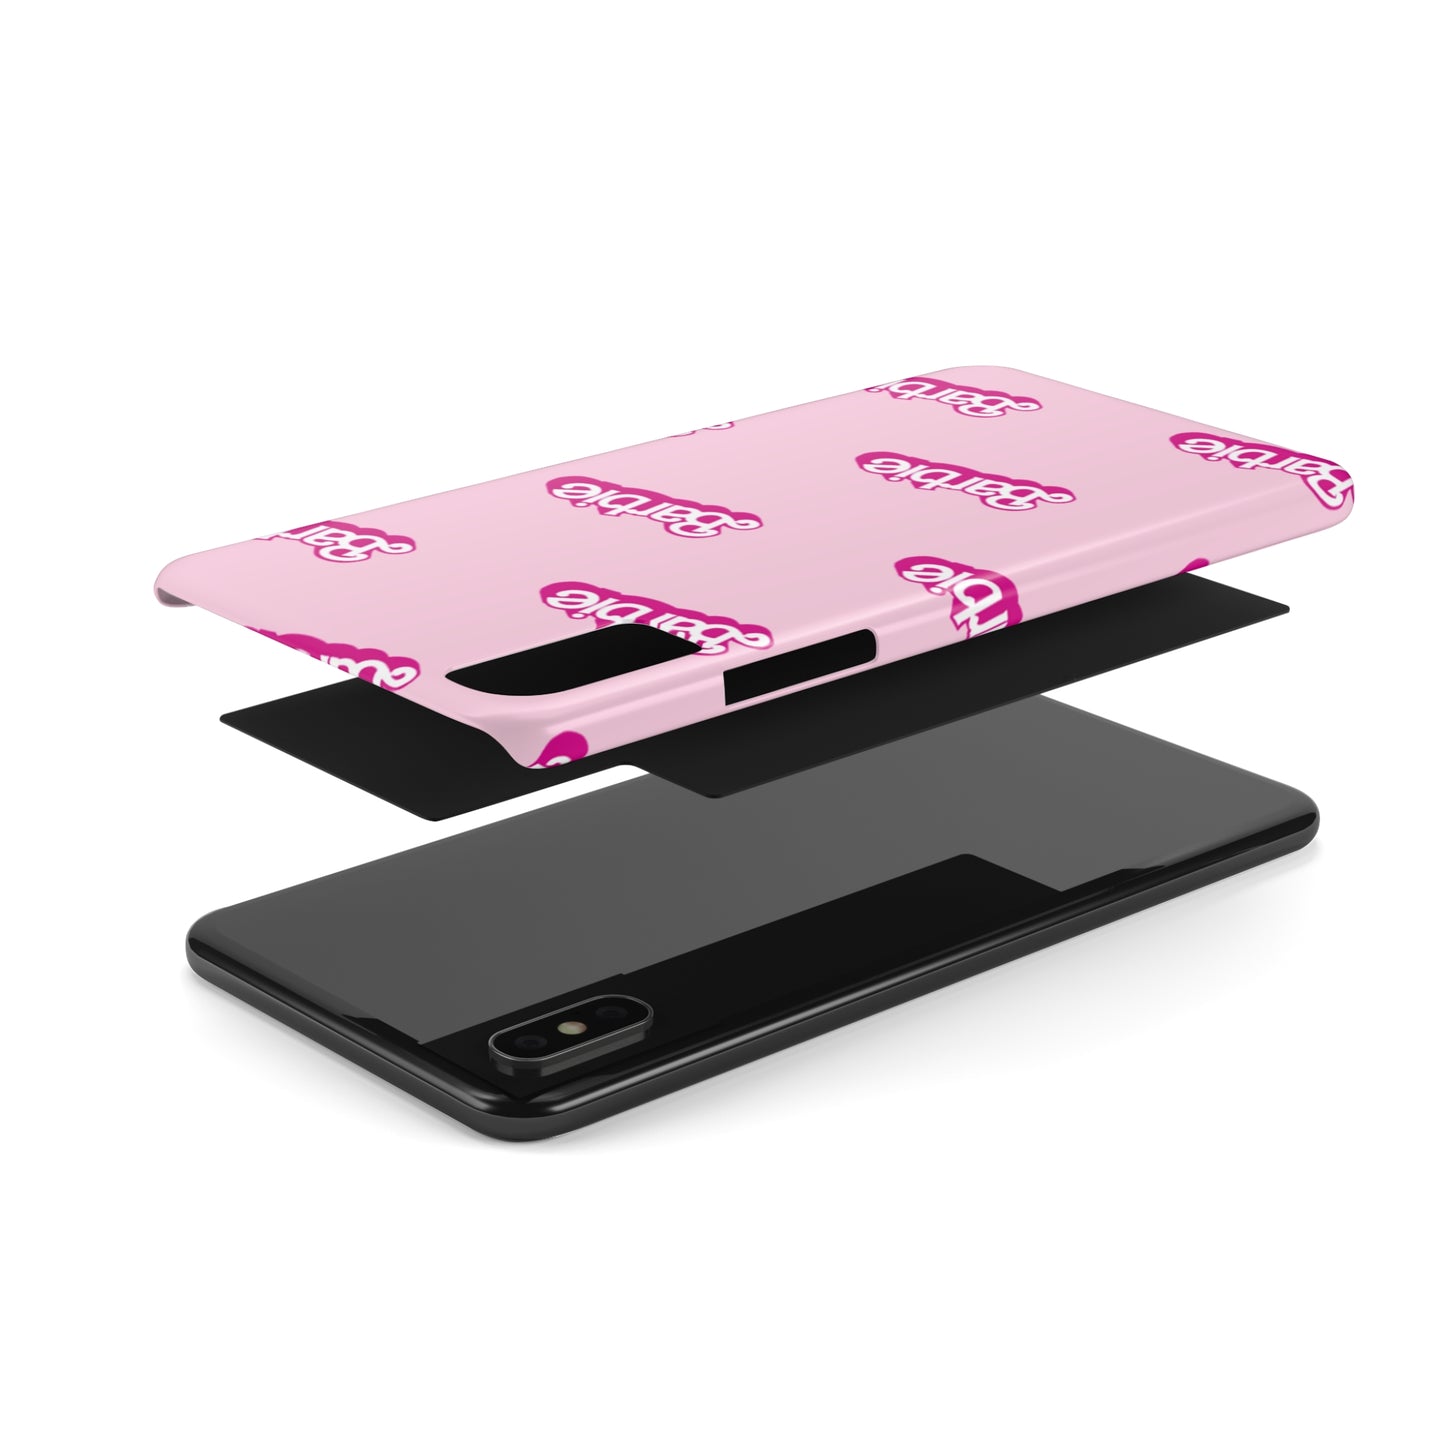 Barbie Pattern Pink Slim Phone Cases